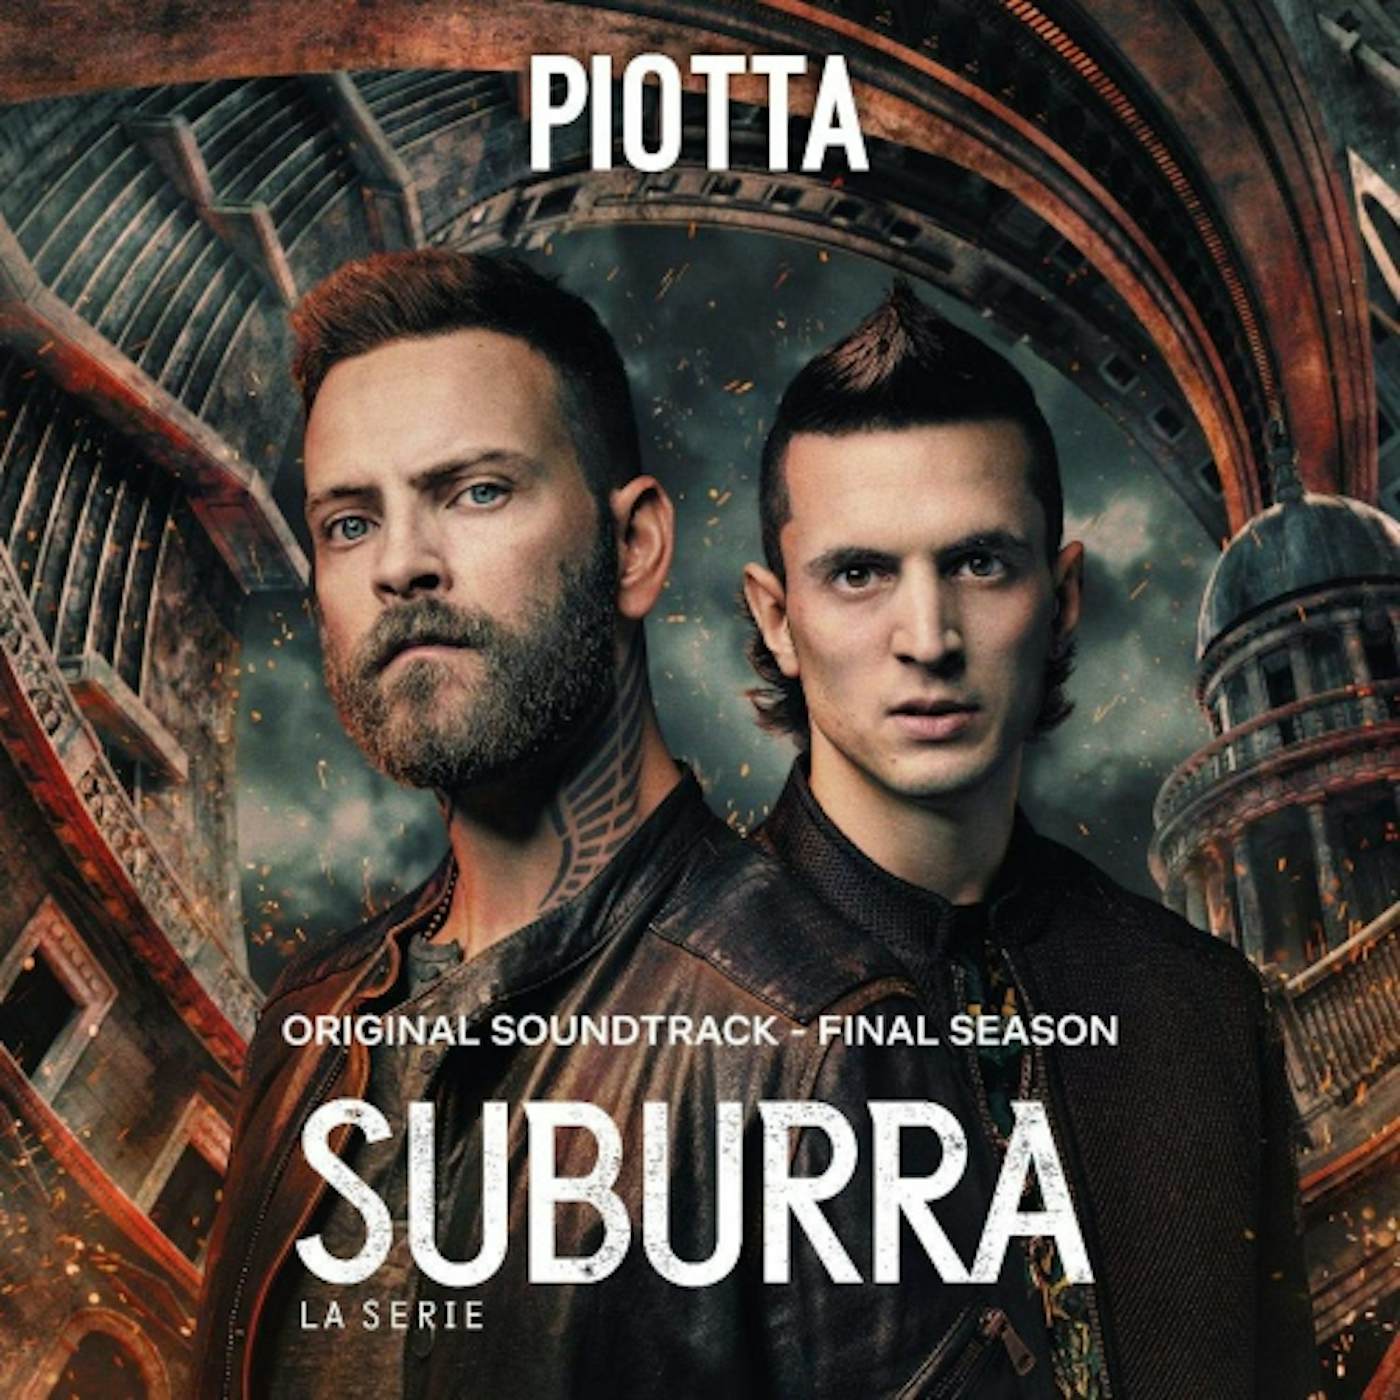 Piotta SUBURRA Vinyl Record